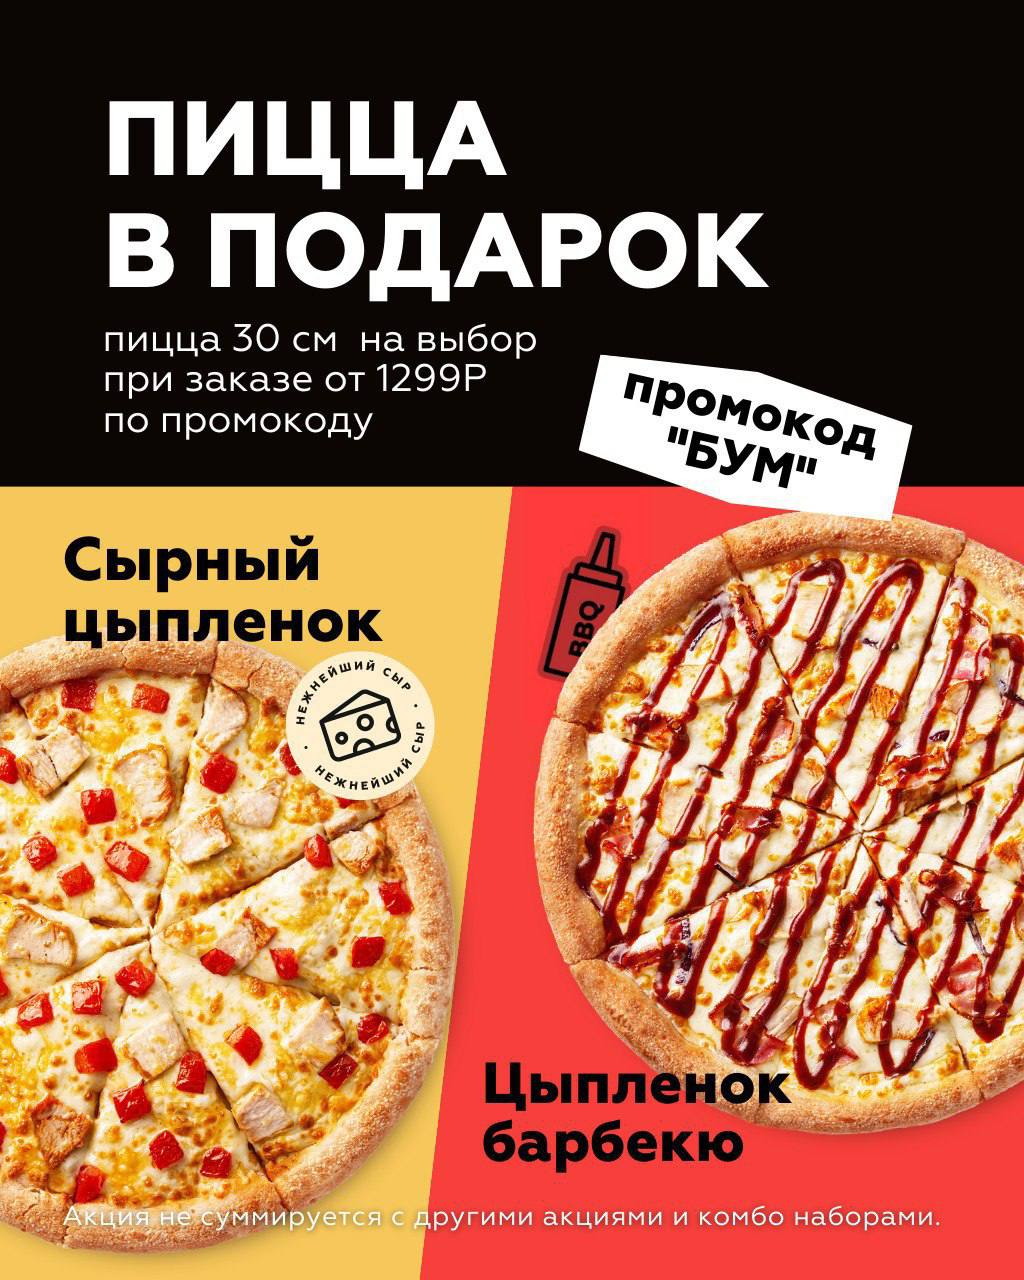 Пицца синица сайт. Промокоды пицца синица. Промокод пицца синица Новосибирск. Синичка пицца. Пицца синица реклама.